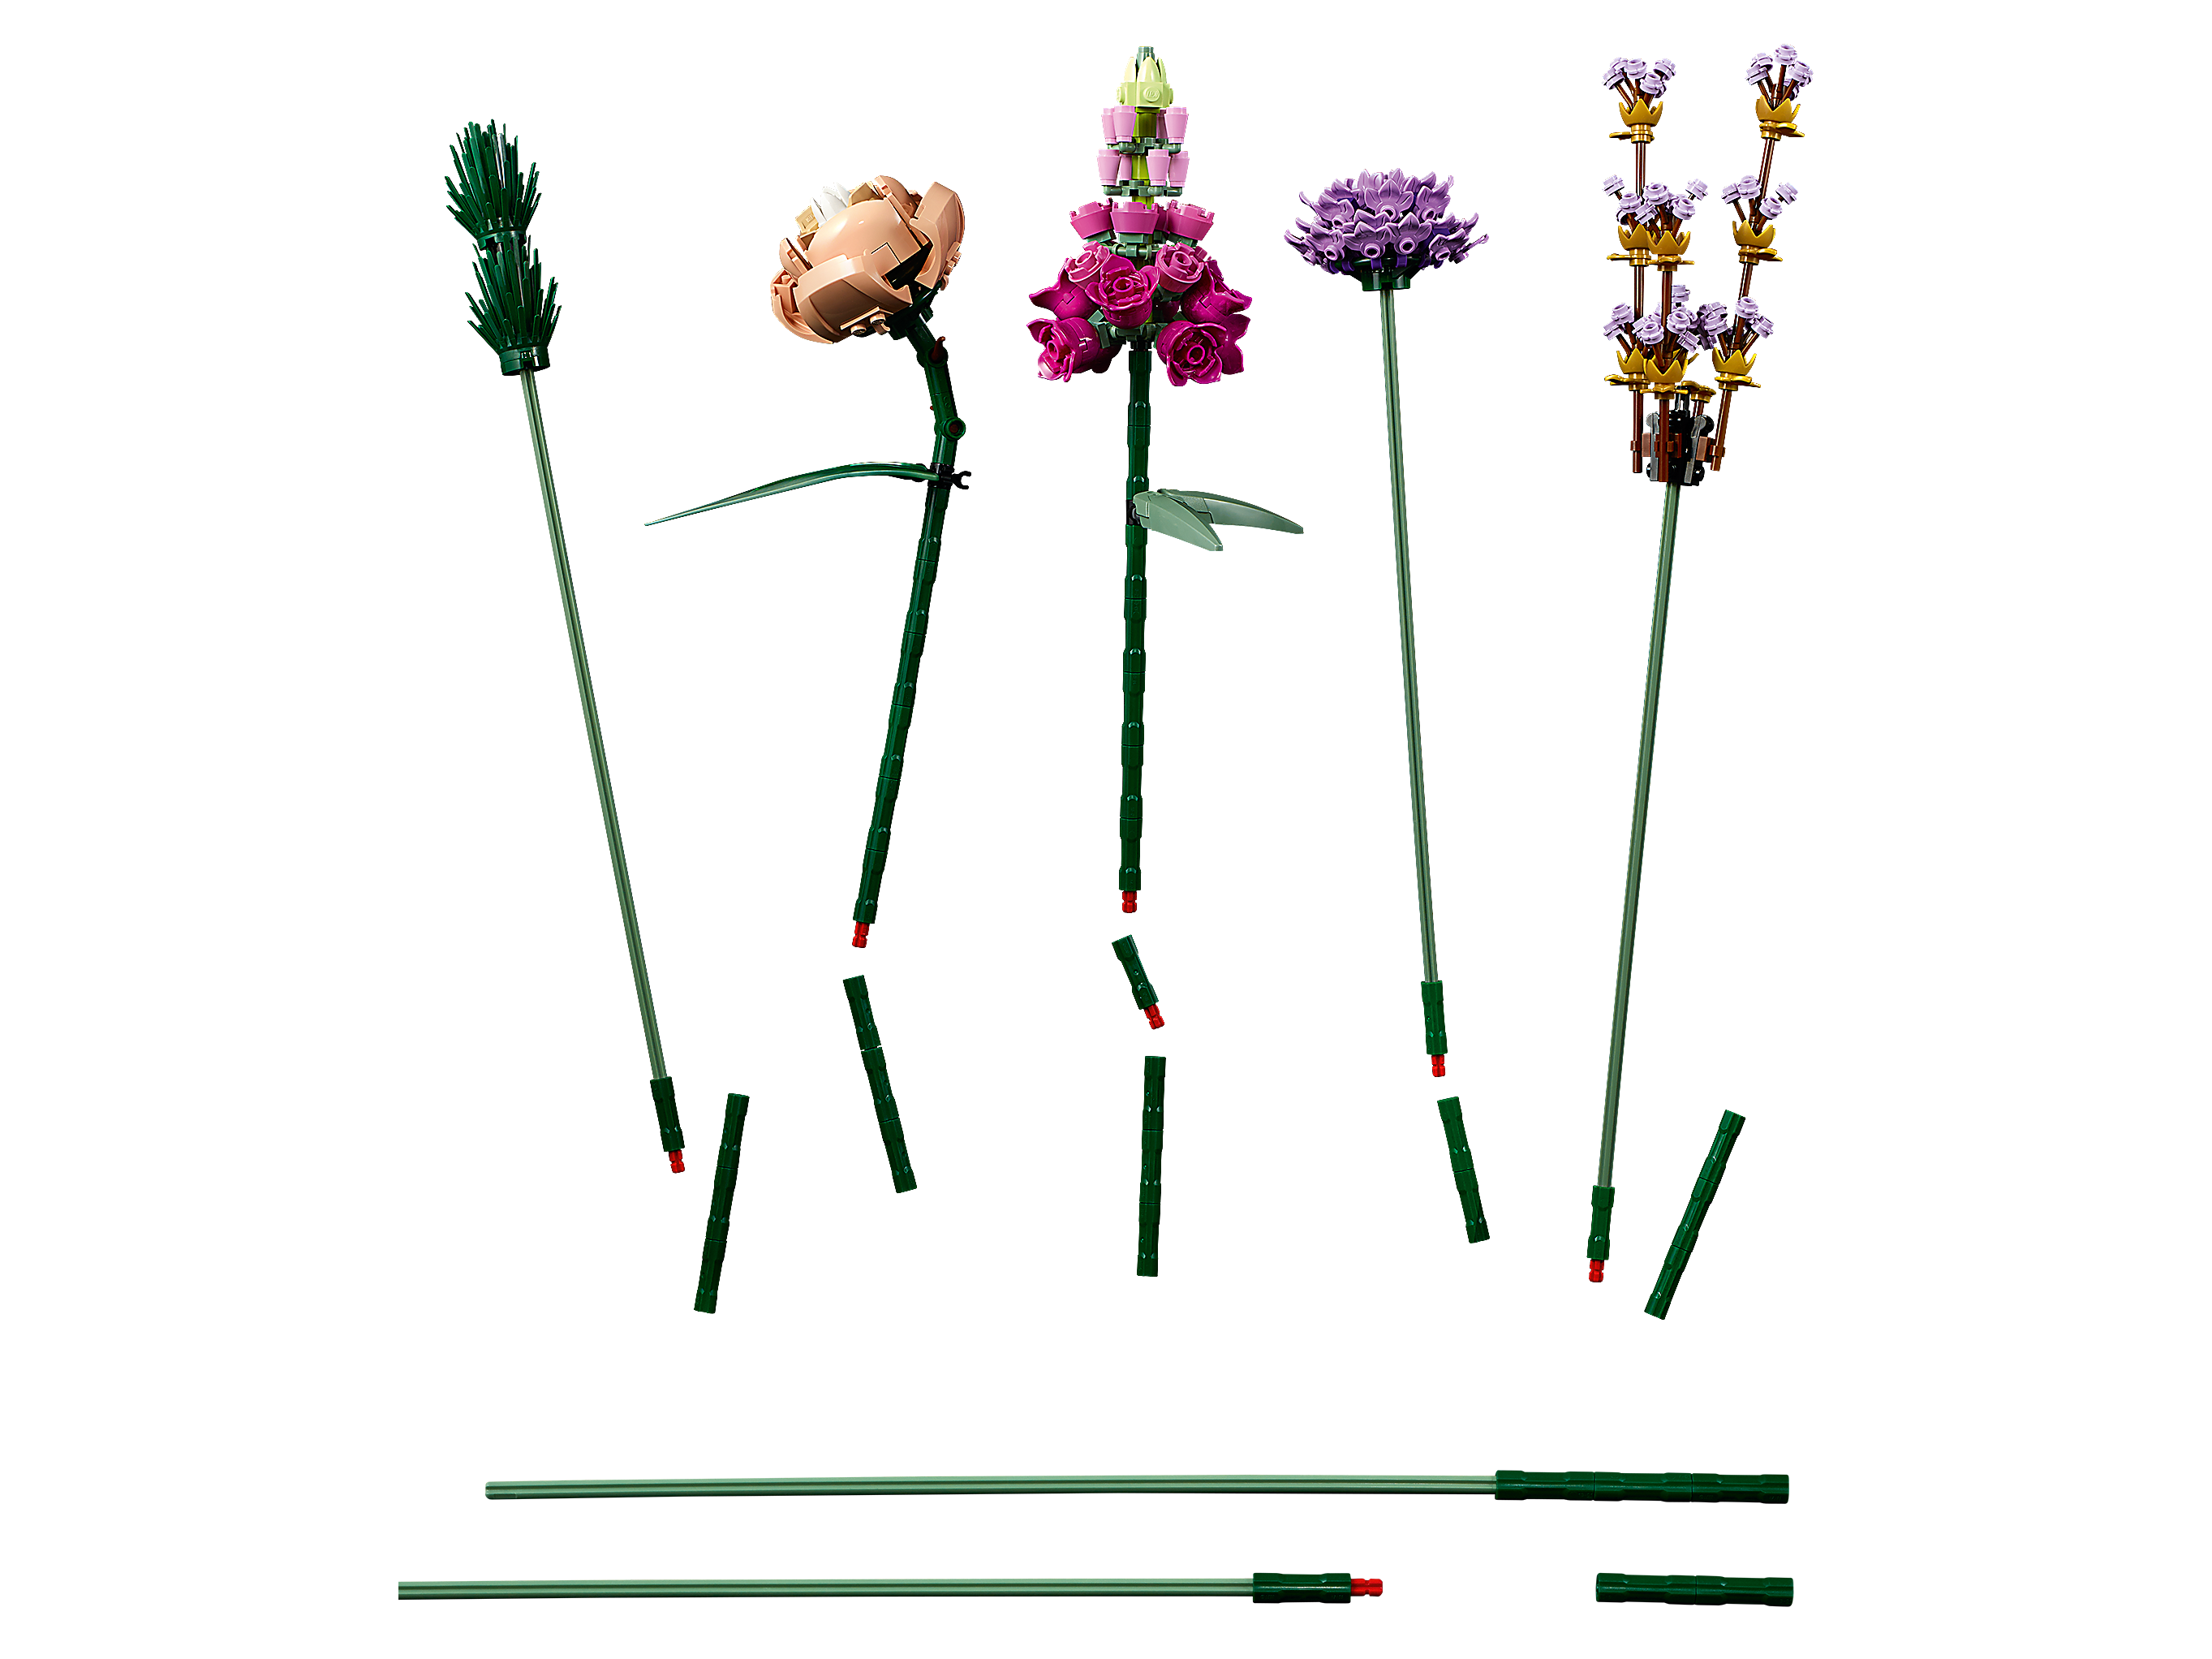 LEGO Botanical Collection Flower Bouquet 10280 Building Set 756pcs  Valentines ✓